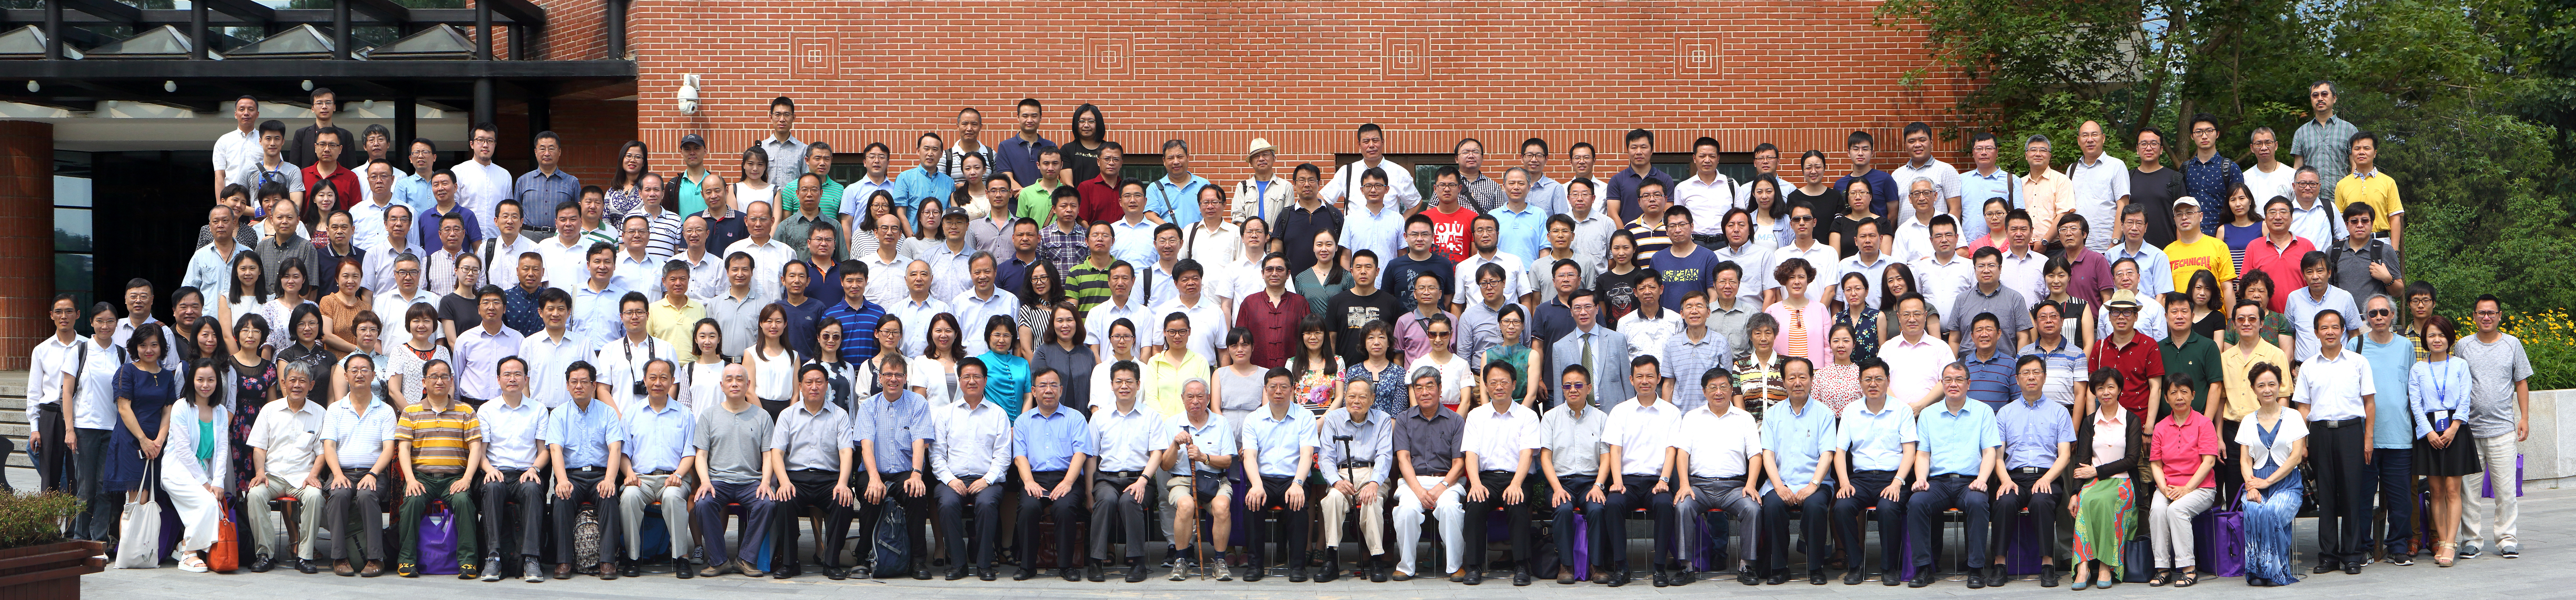 清华大学科学史系成立大会6月30日举行